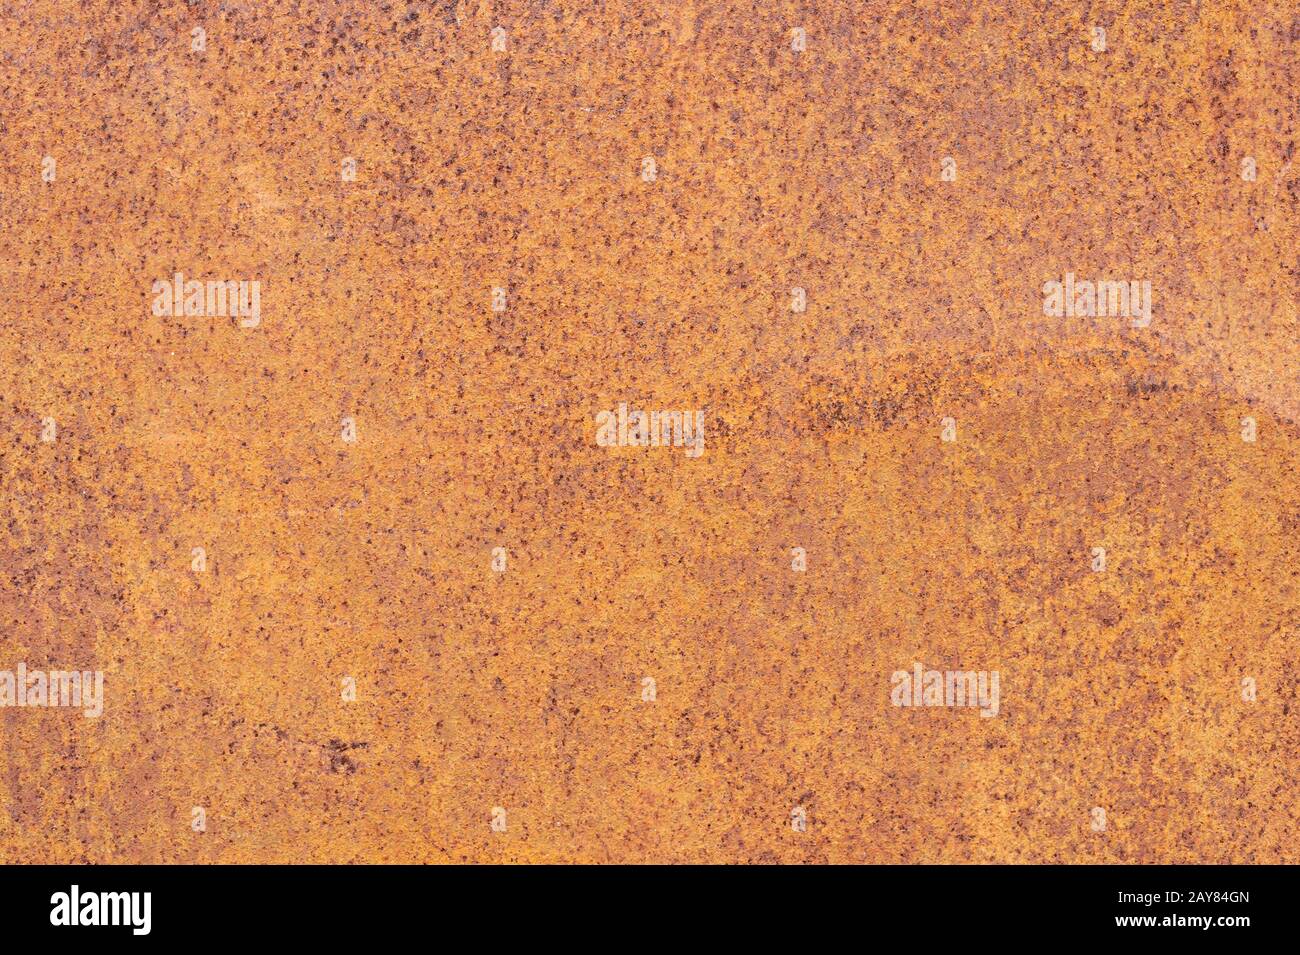 Surface métallique texturée rouillée jaune-rouge. La texture de la tôle est sujette à l'oxydation et à la corrosion. Fond Grunge Banque D'Images